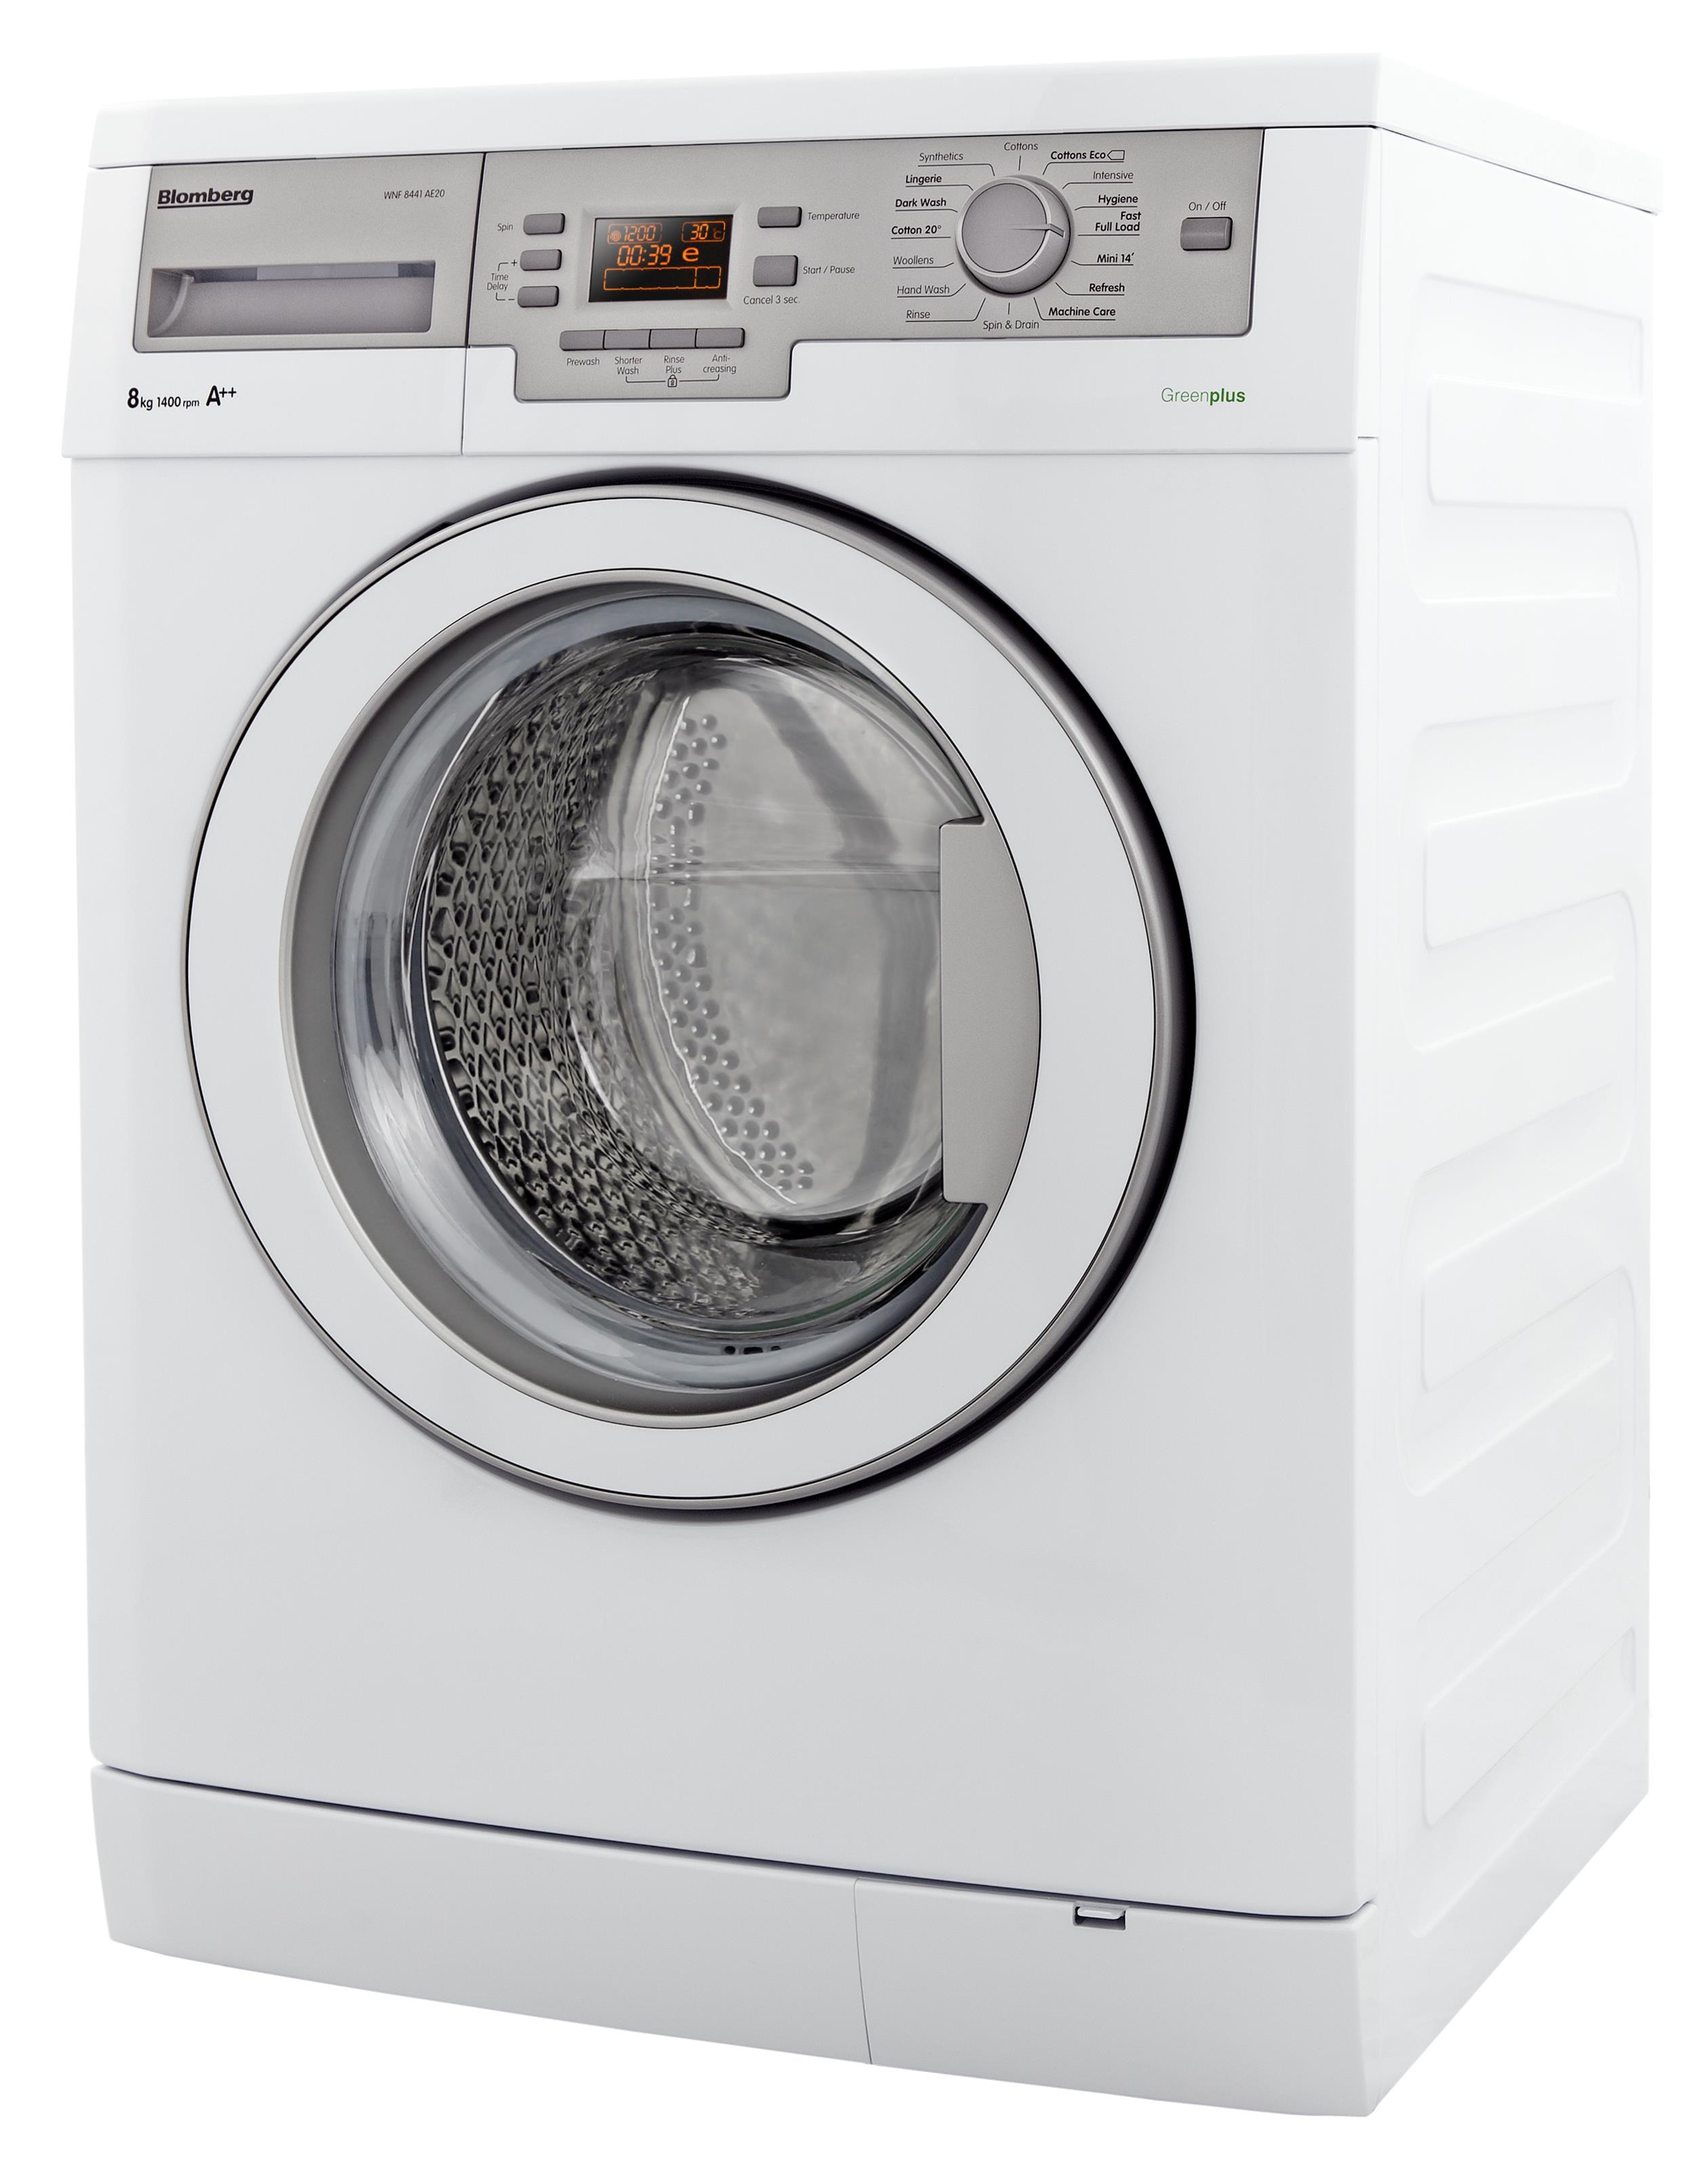 unbalanced washing machine repair